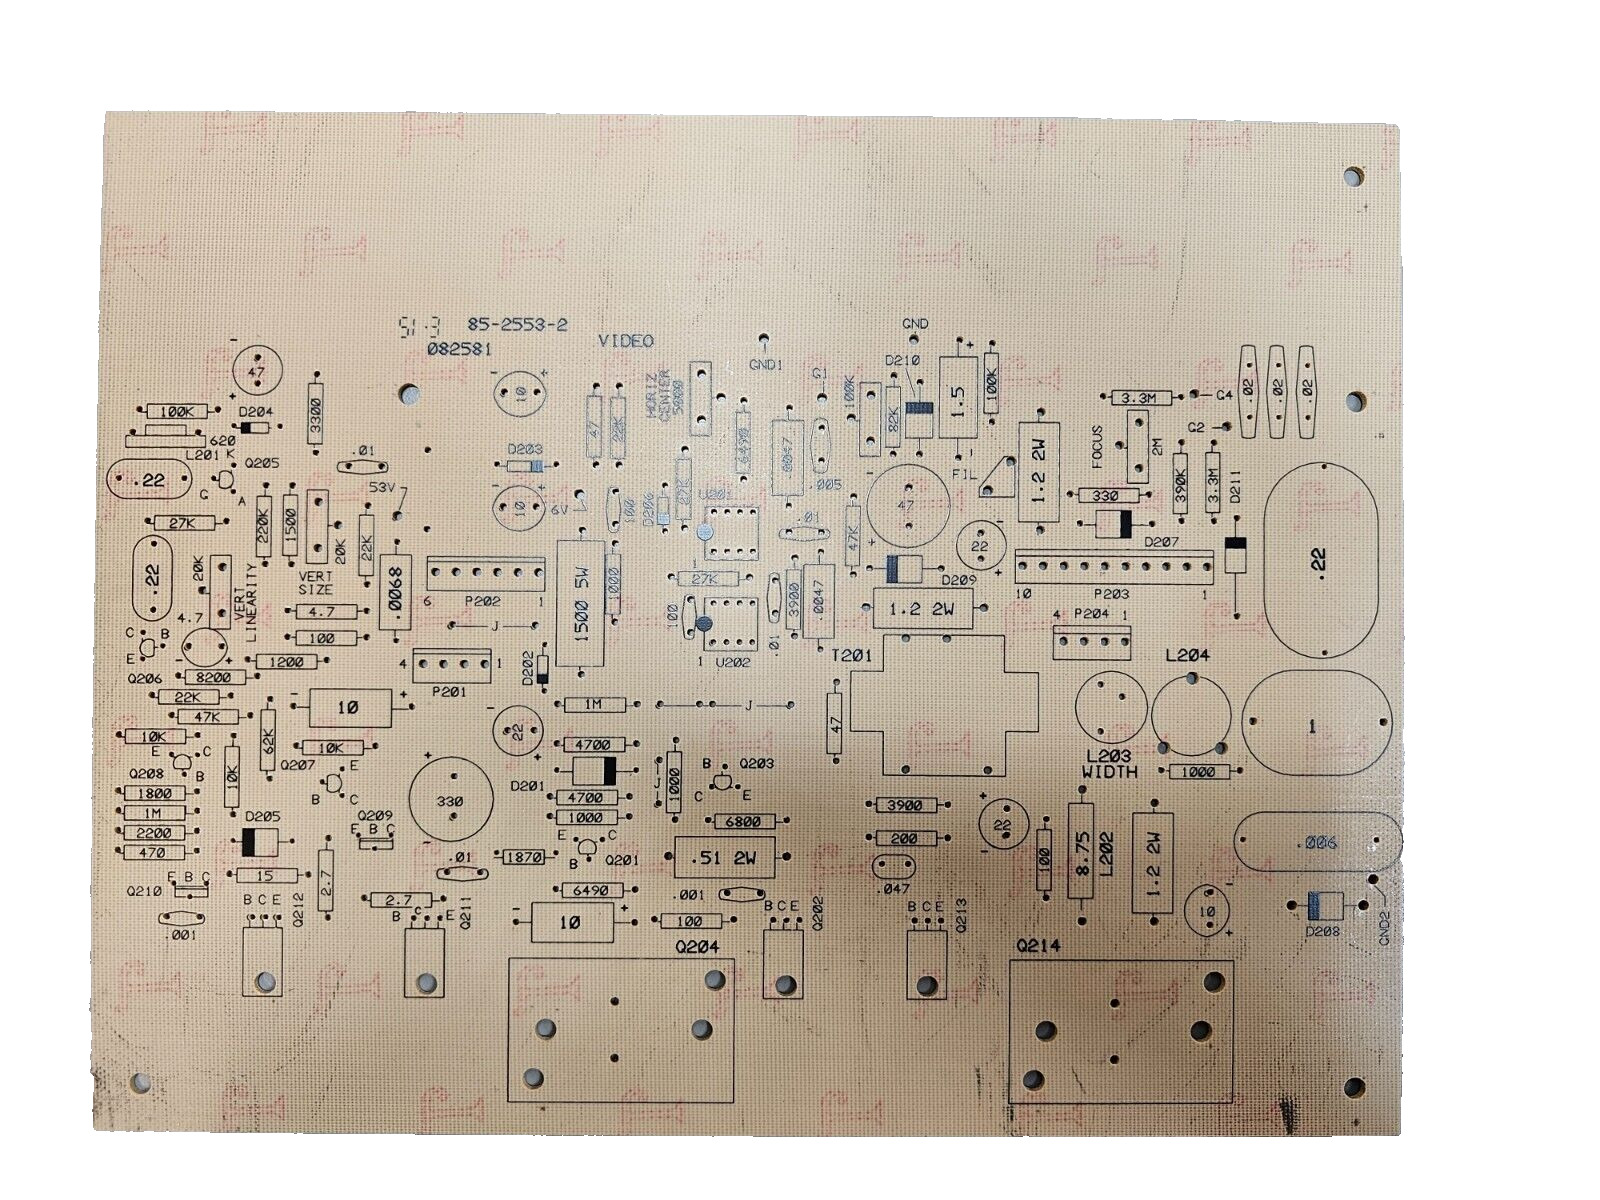 Rare Unused Vintage Heath Corporation 1982 H19 Printed Circuit Board 85-2553